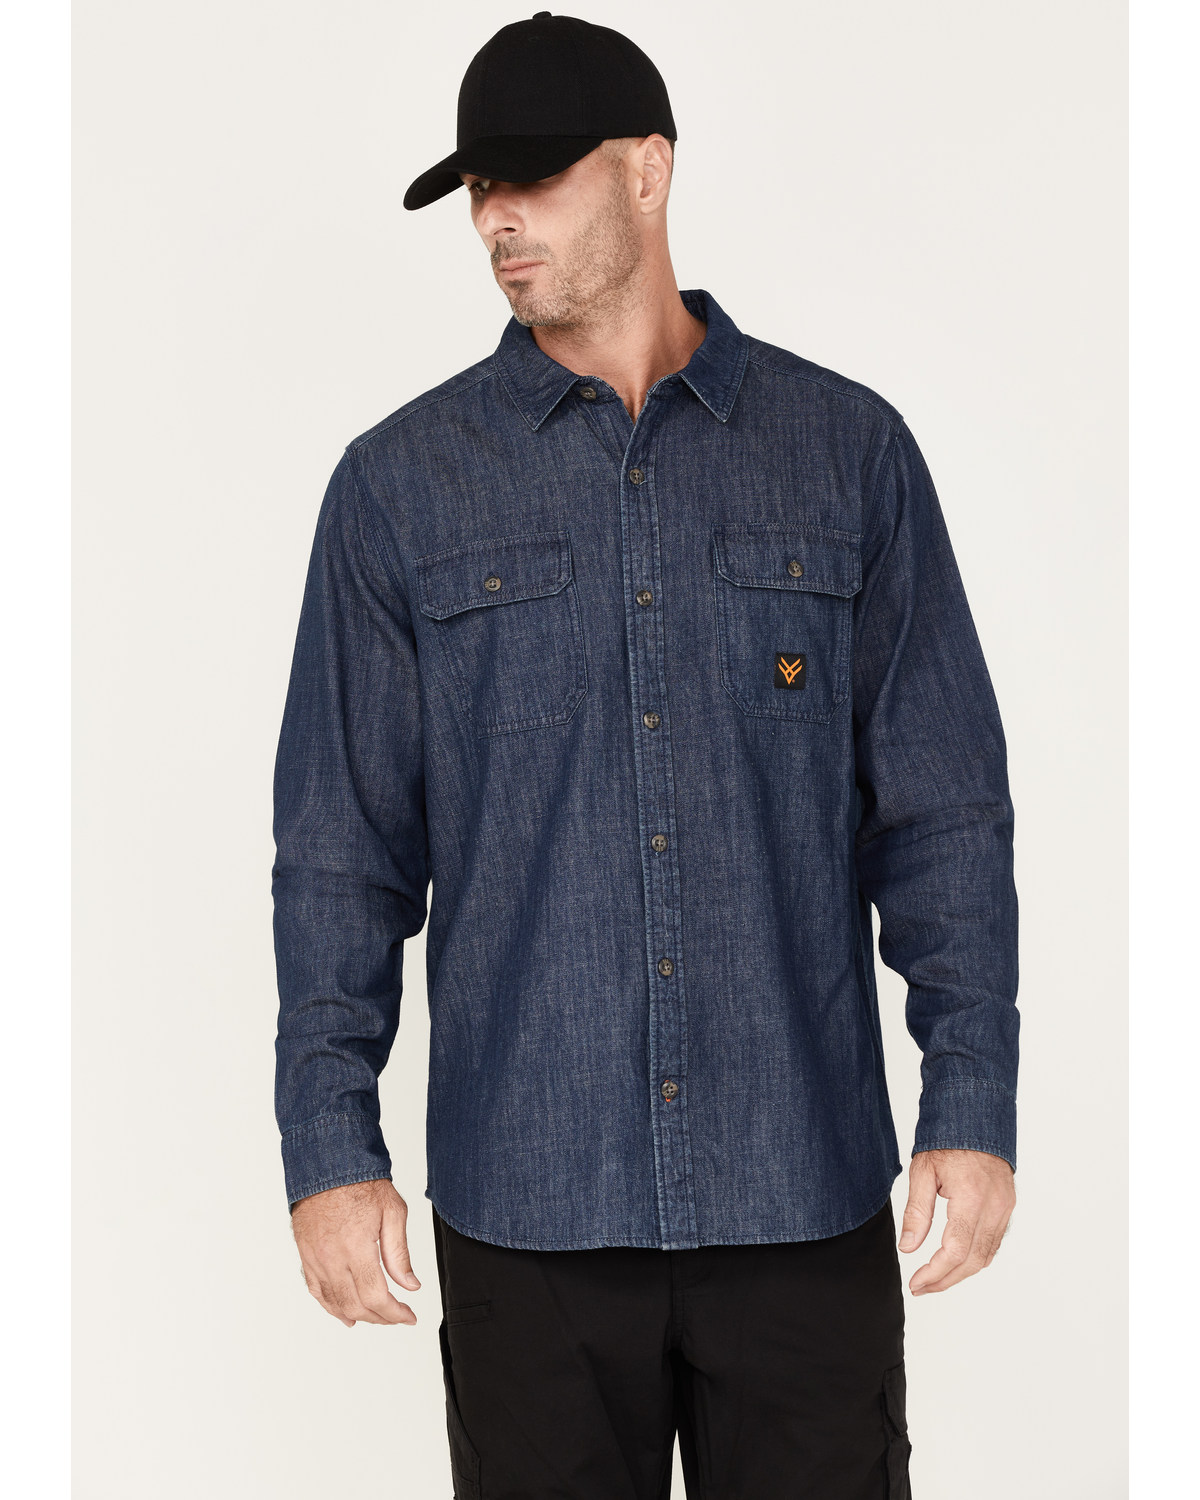 Hawx Men's Denim Work Shirt - Big & Tall